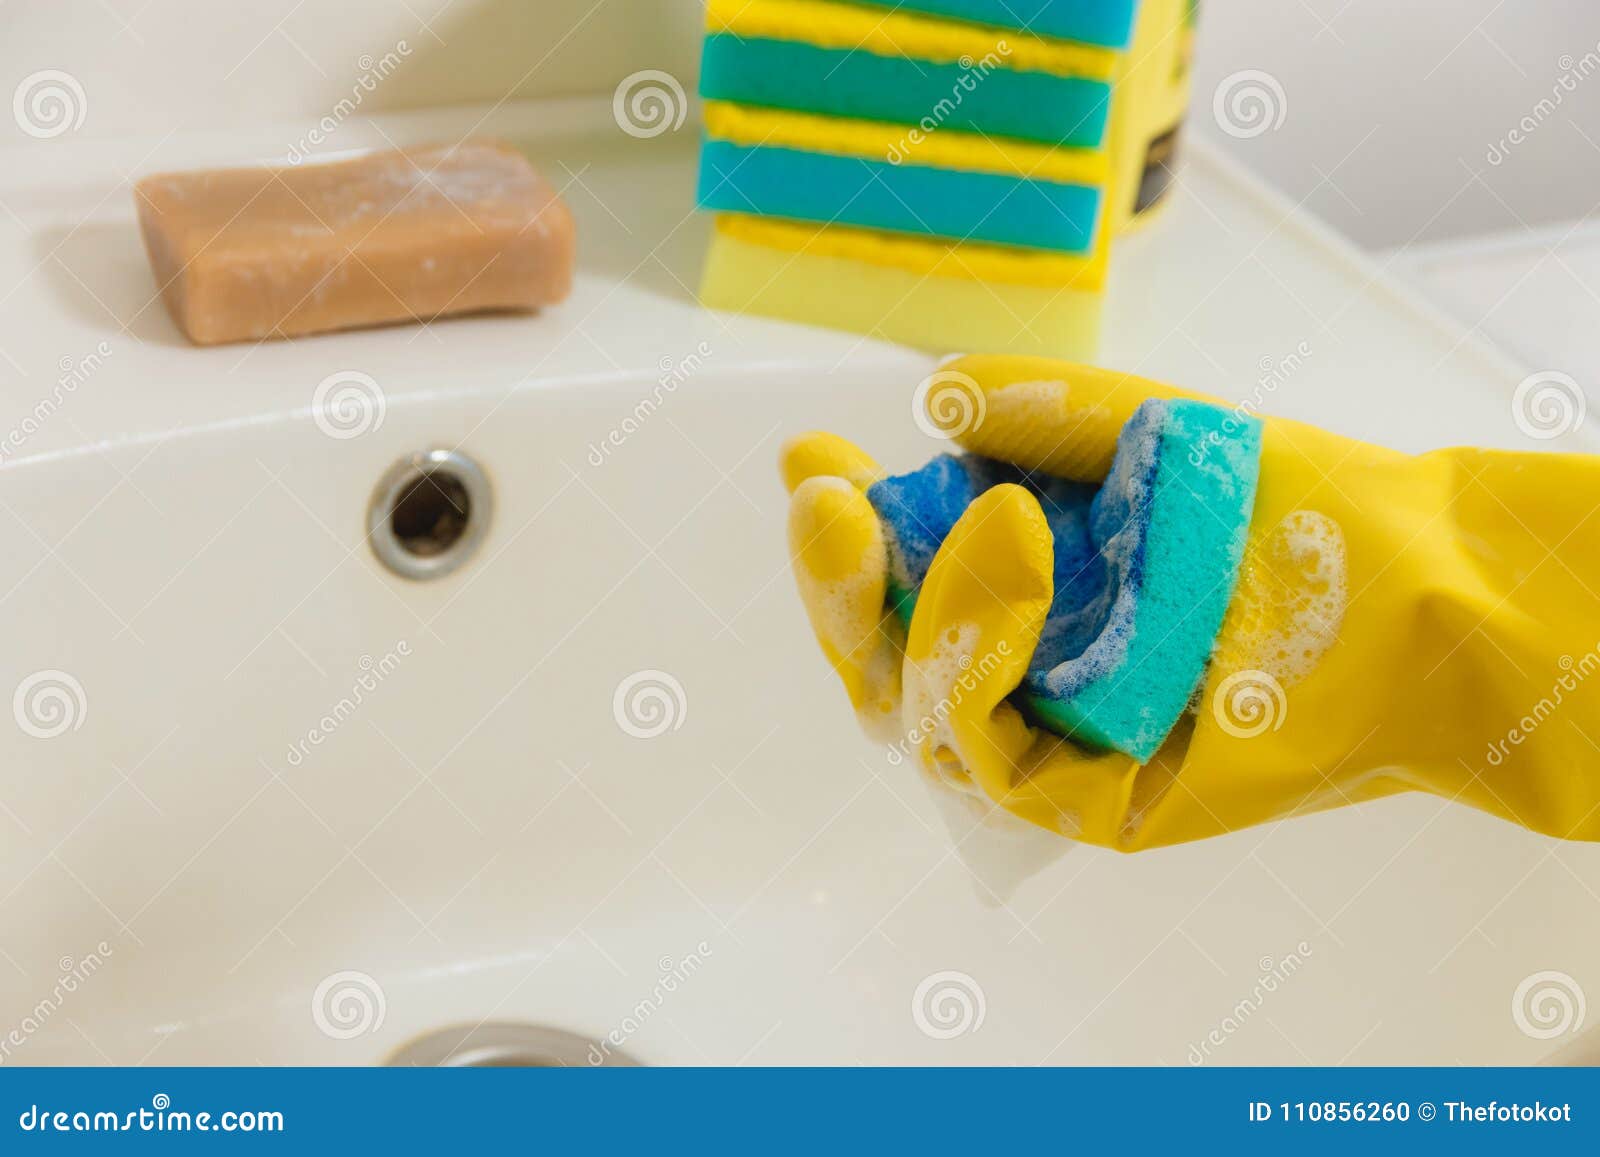 Чем отмыть желтую ванну. Чистетел вану резинавий. Пятновыводитель китайский голубой с губкой. Пожелтела резиновая часть лейки в ванной. Покрытие стали порошком в ванной.